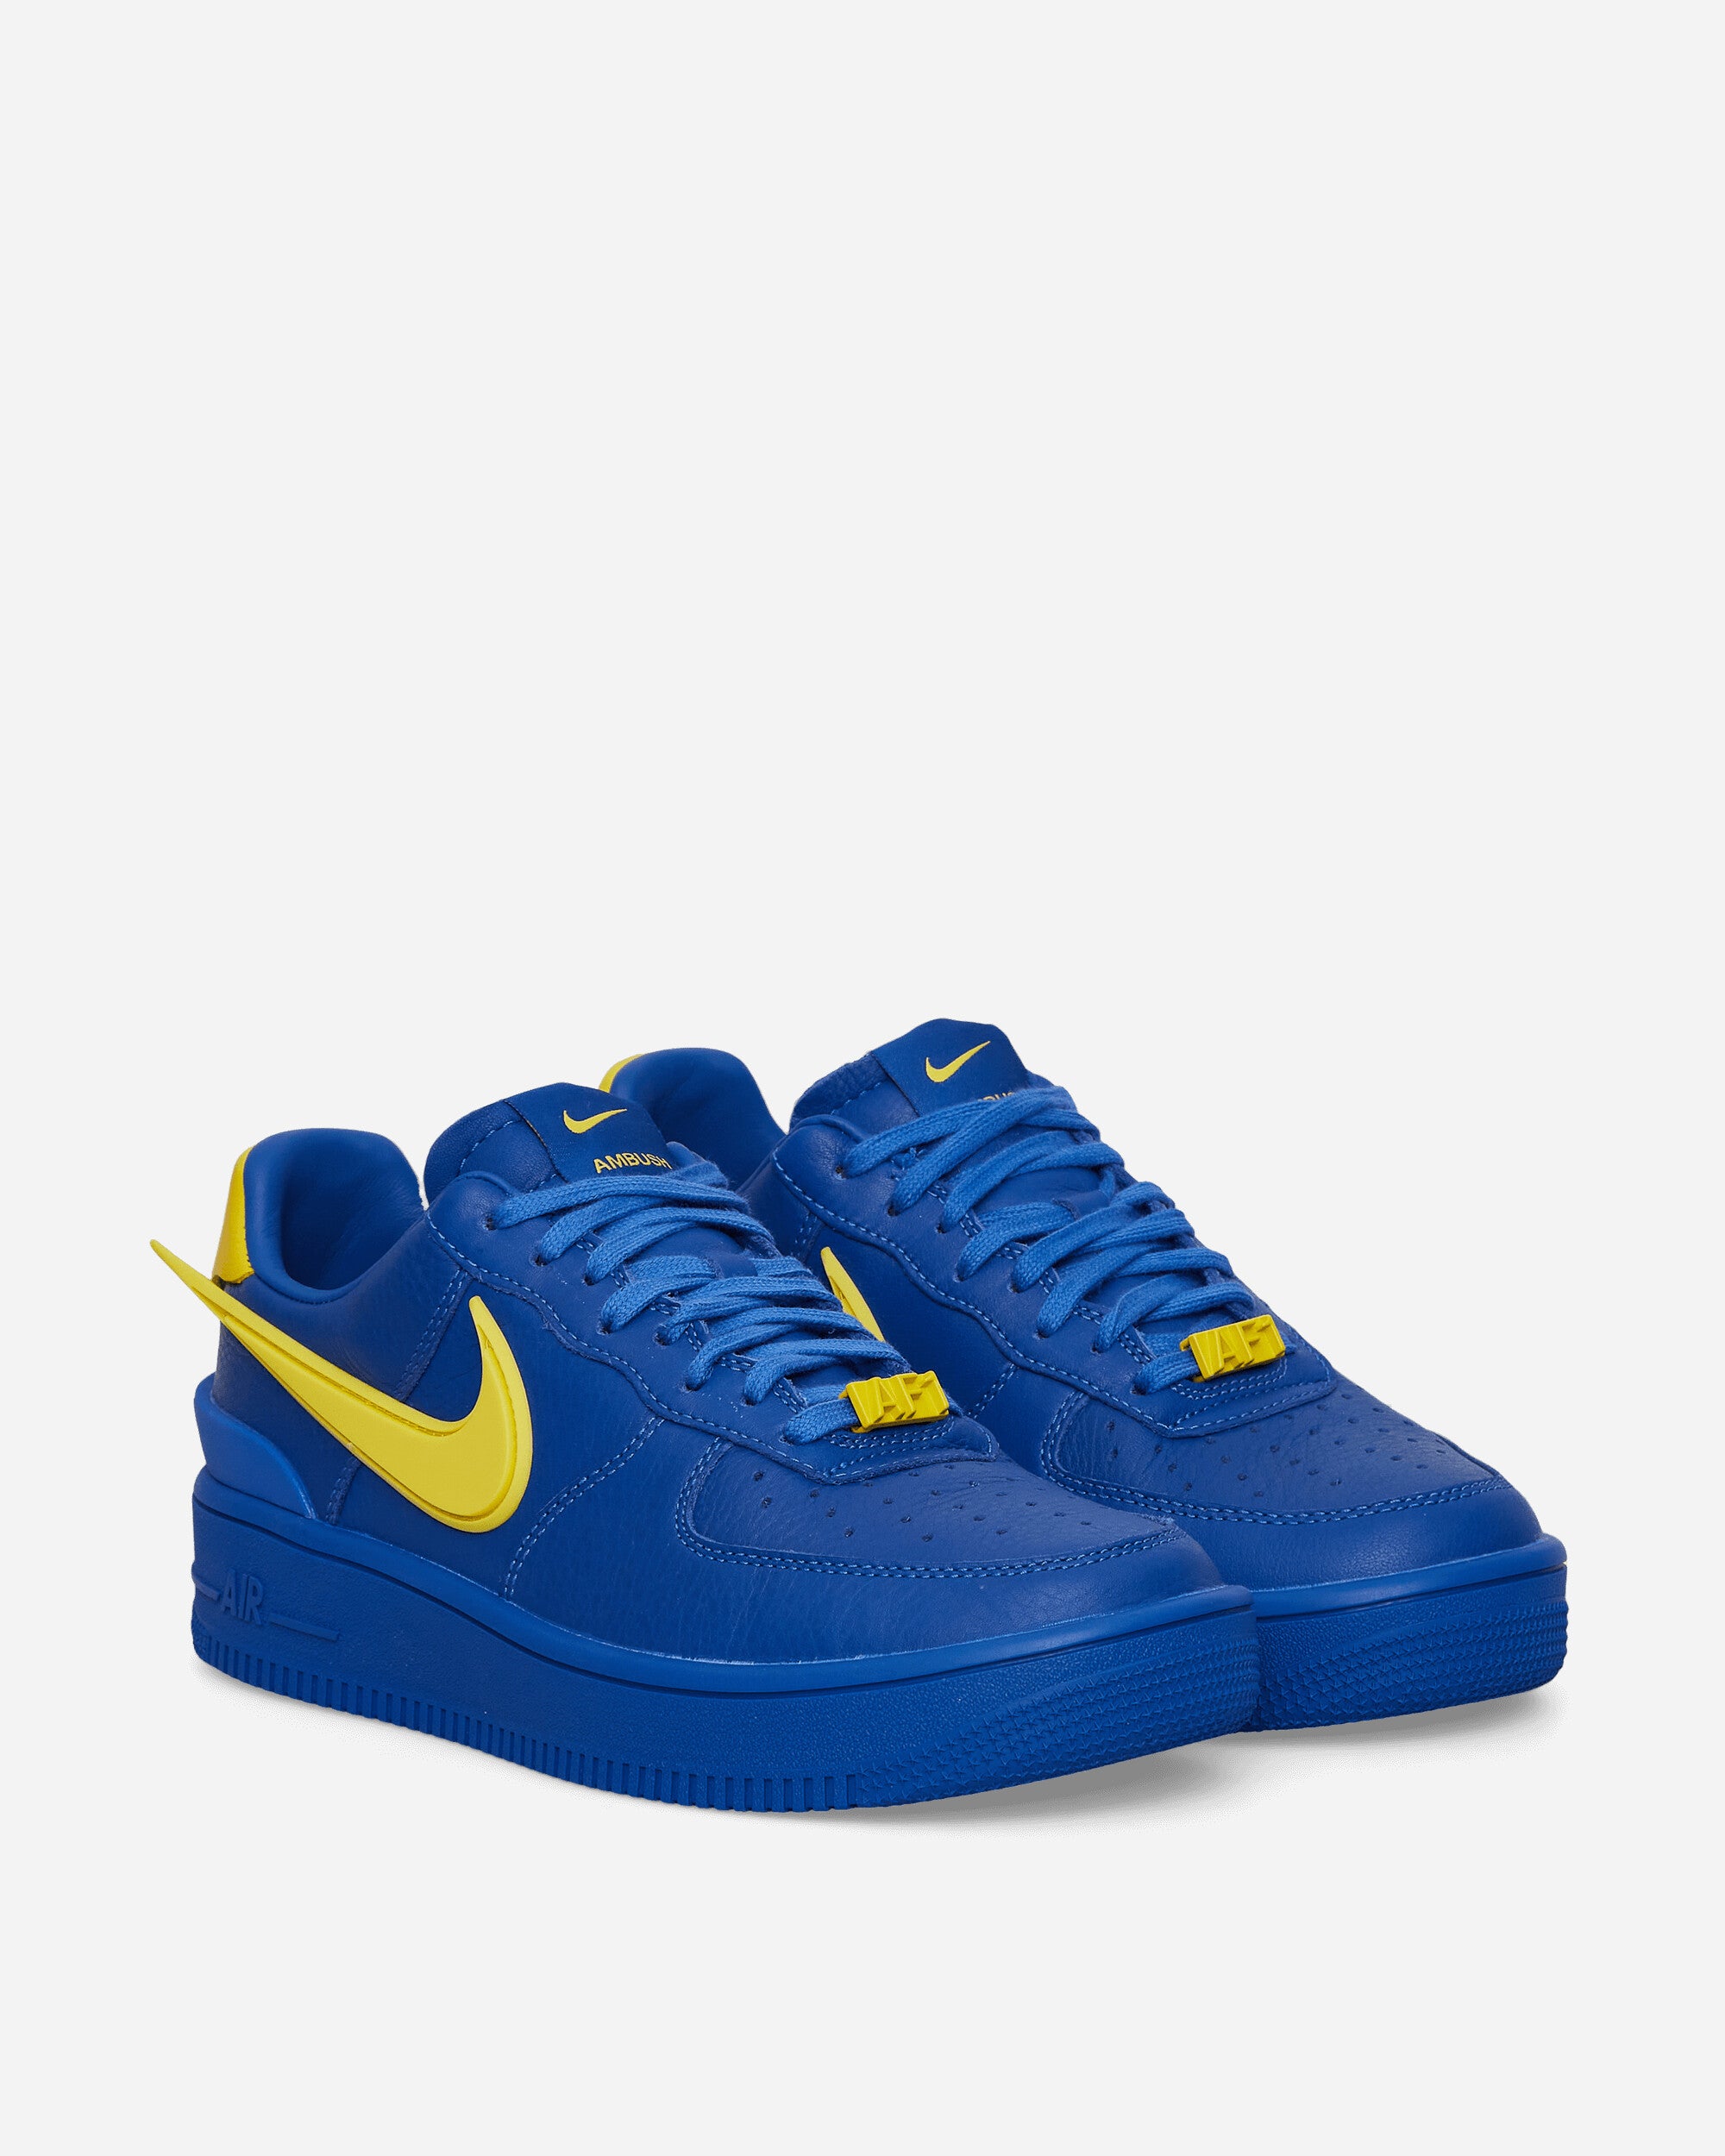 Zending Uitgebreid definitief Nike AMBUSH® Air Force 1 Sneakers Blue - Slam Jam Official Store